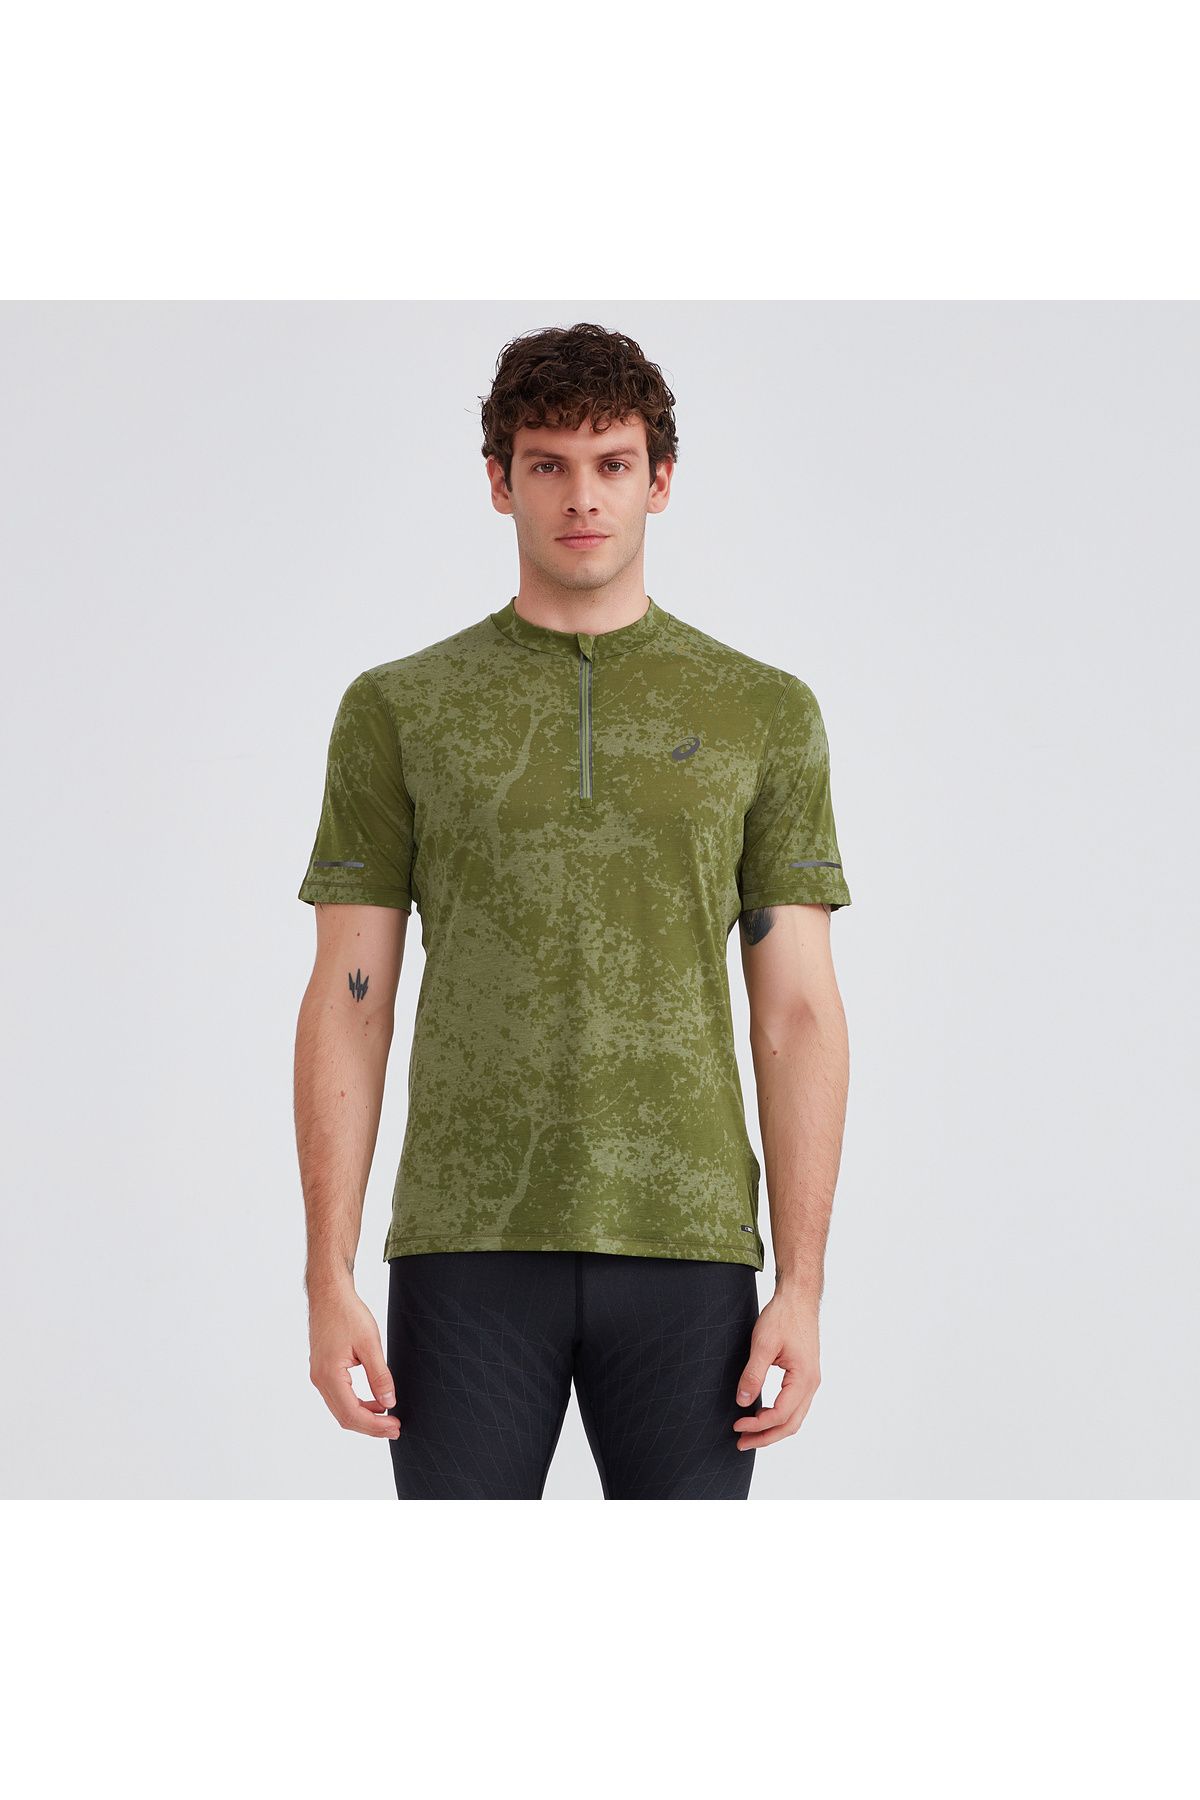 Asics Metarun 1/2 Zip Ss Top - Pattern Erkek Yeşil Kısa Kollu Tshirt 2011c872-300